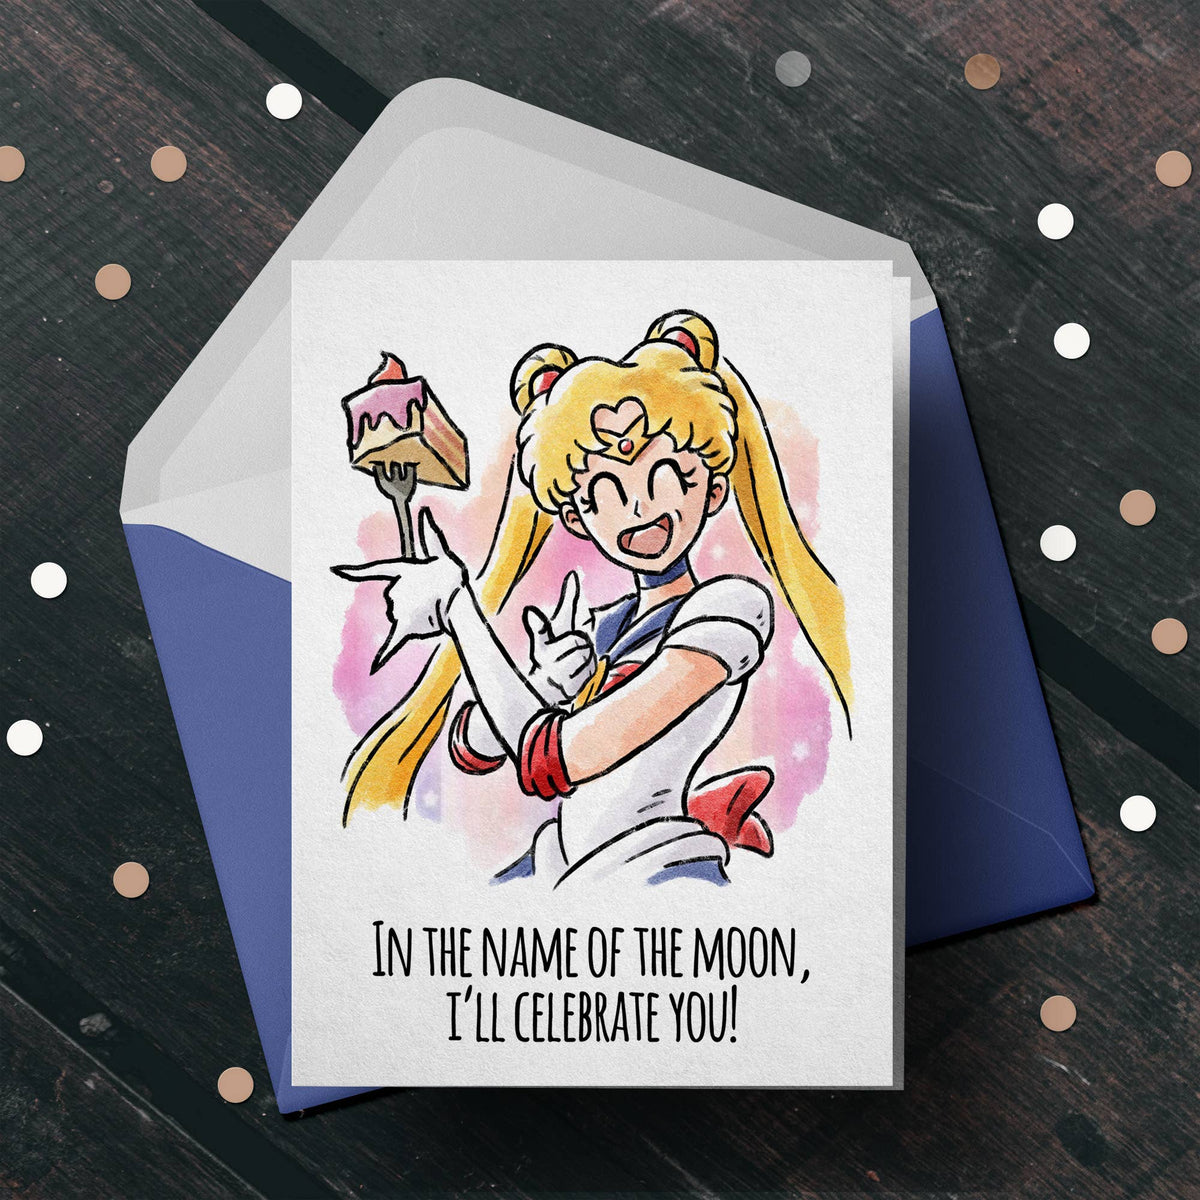 "Name of the Moon" Sailor Moon - Anime / Manga Birthday Card